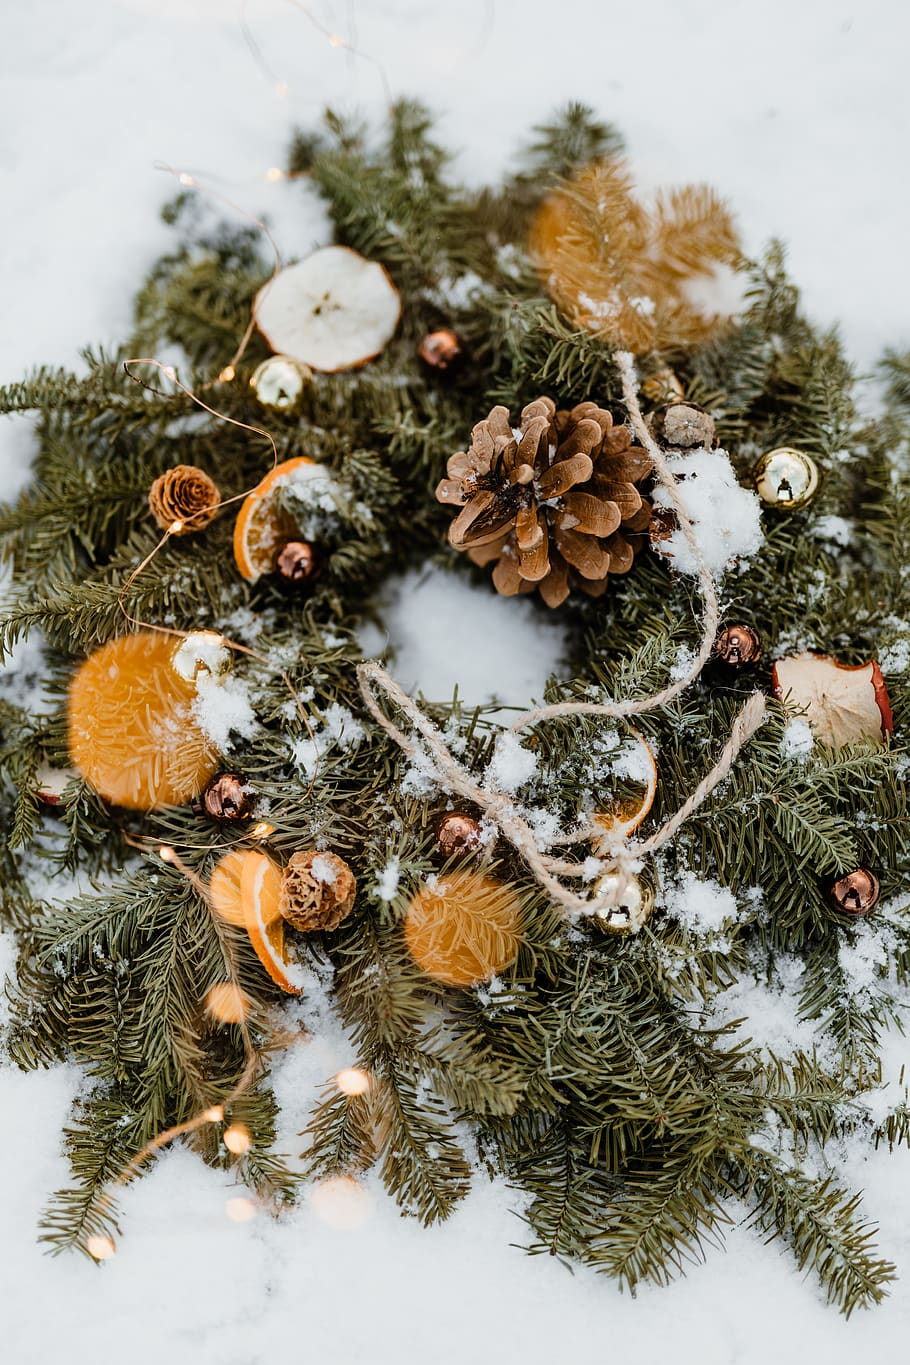 natal, decoração, decorações, dezembro, neve, Inverno, Coroa de flores, decoração de natal, árvore, árvore de natal